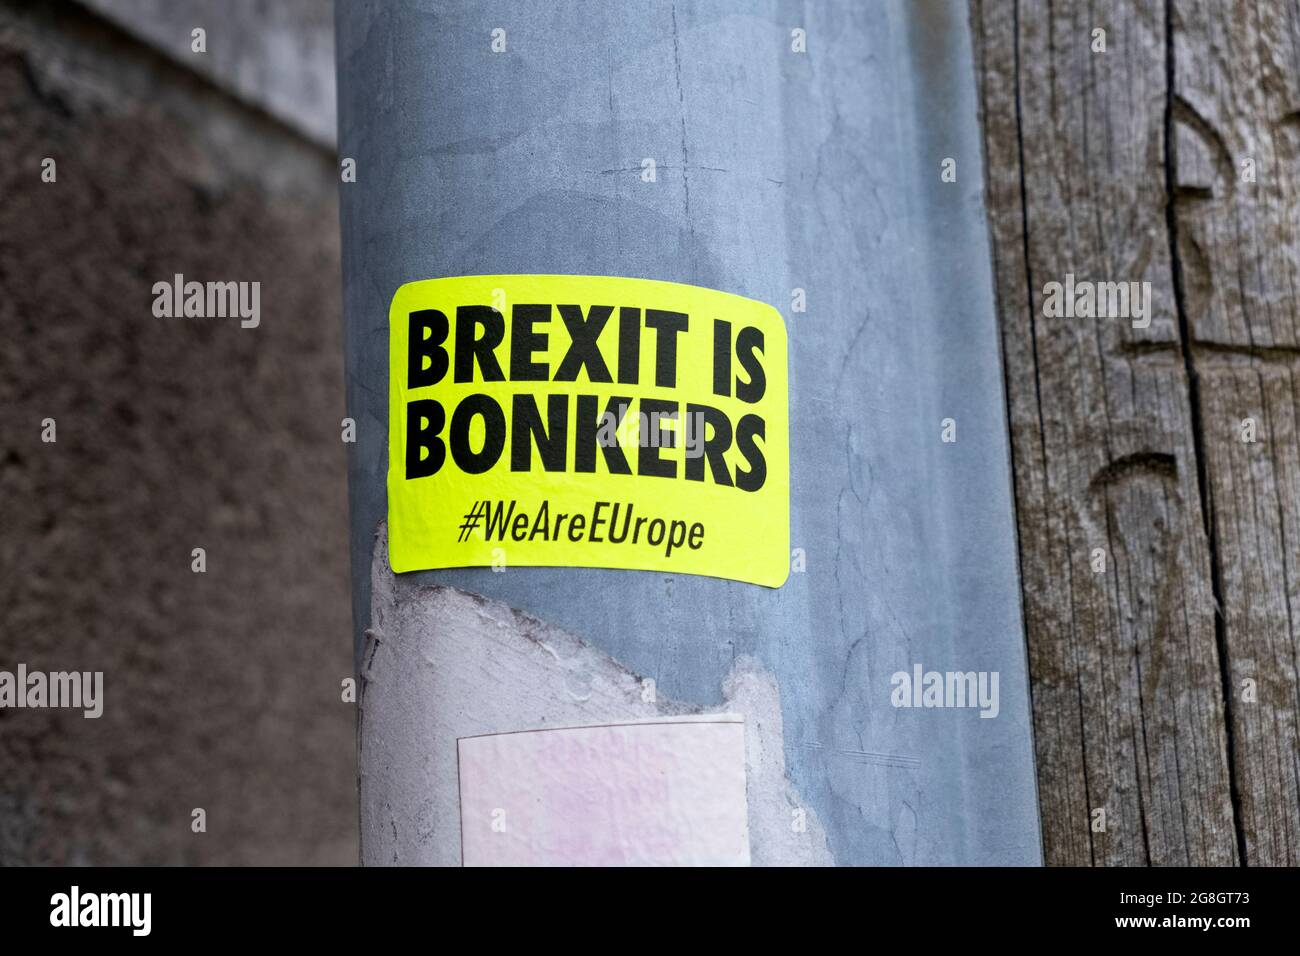 « le Brexit est bonkers » l'UE reste encore un sticker #WeAreEurope sur un poste dans une rue Cardiff pays de Galles Royaume-Uni 2021 KATHY DEWITT Banque D'Images